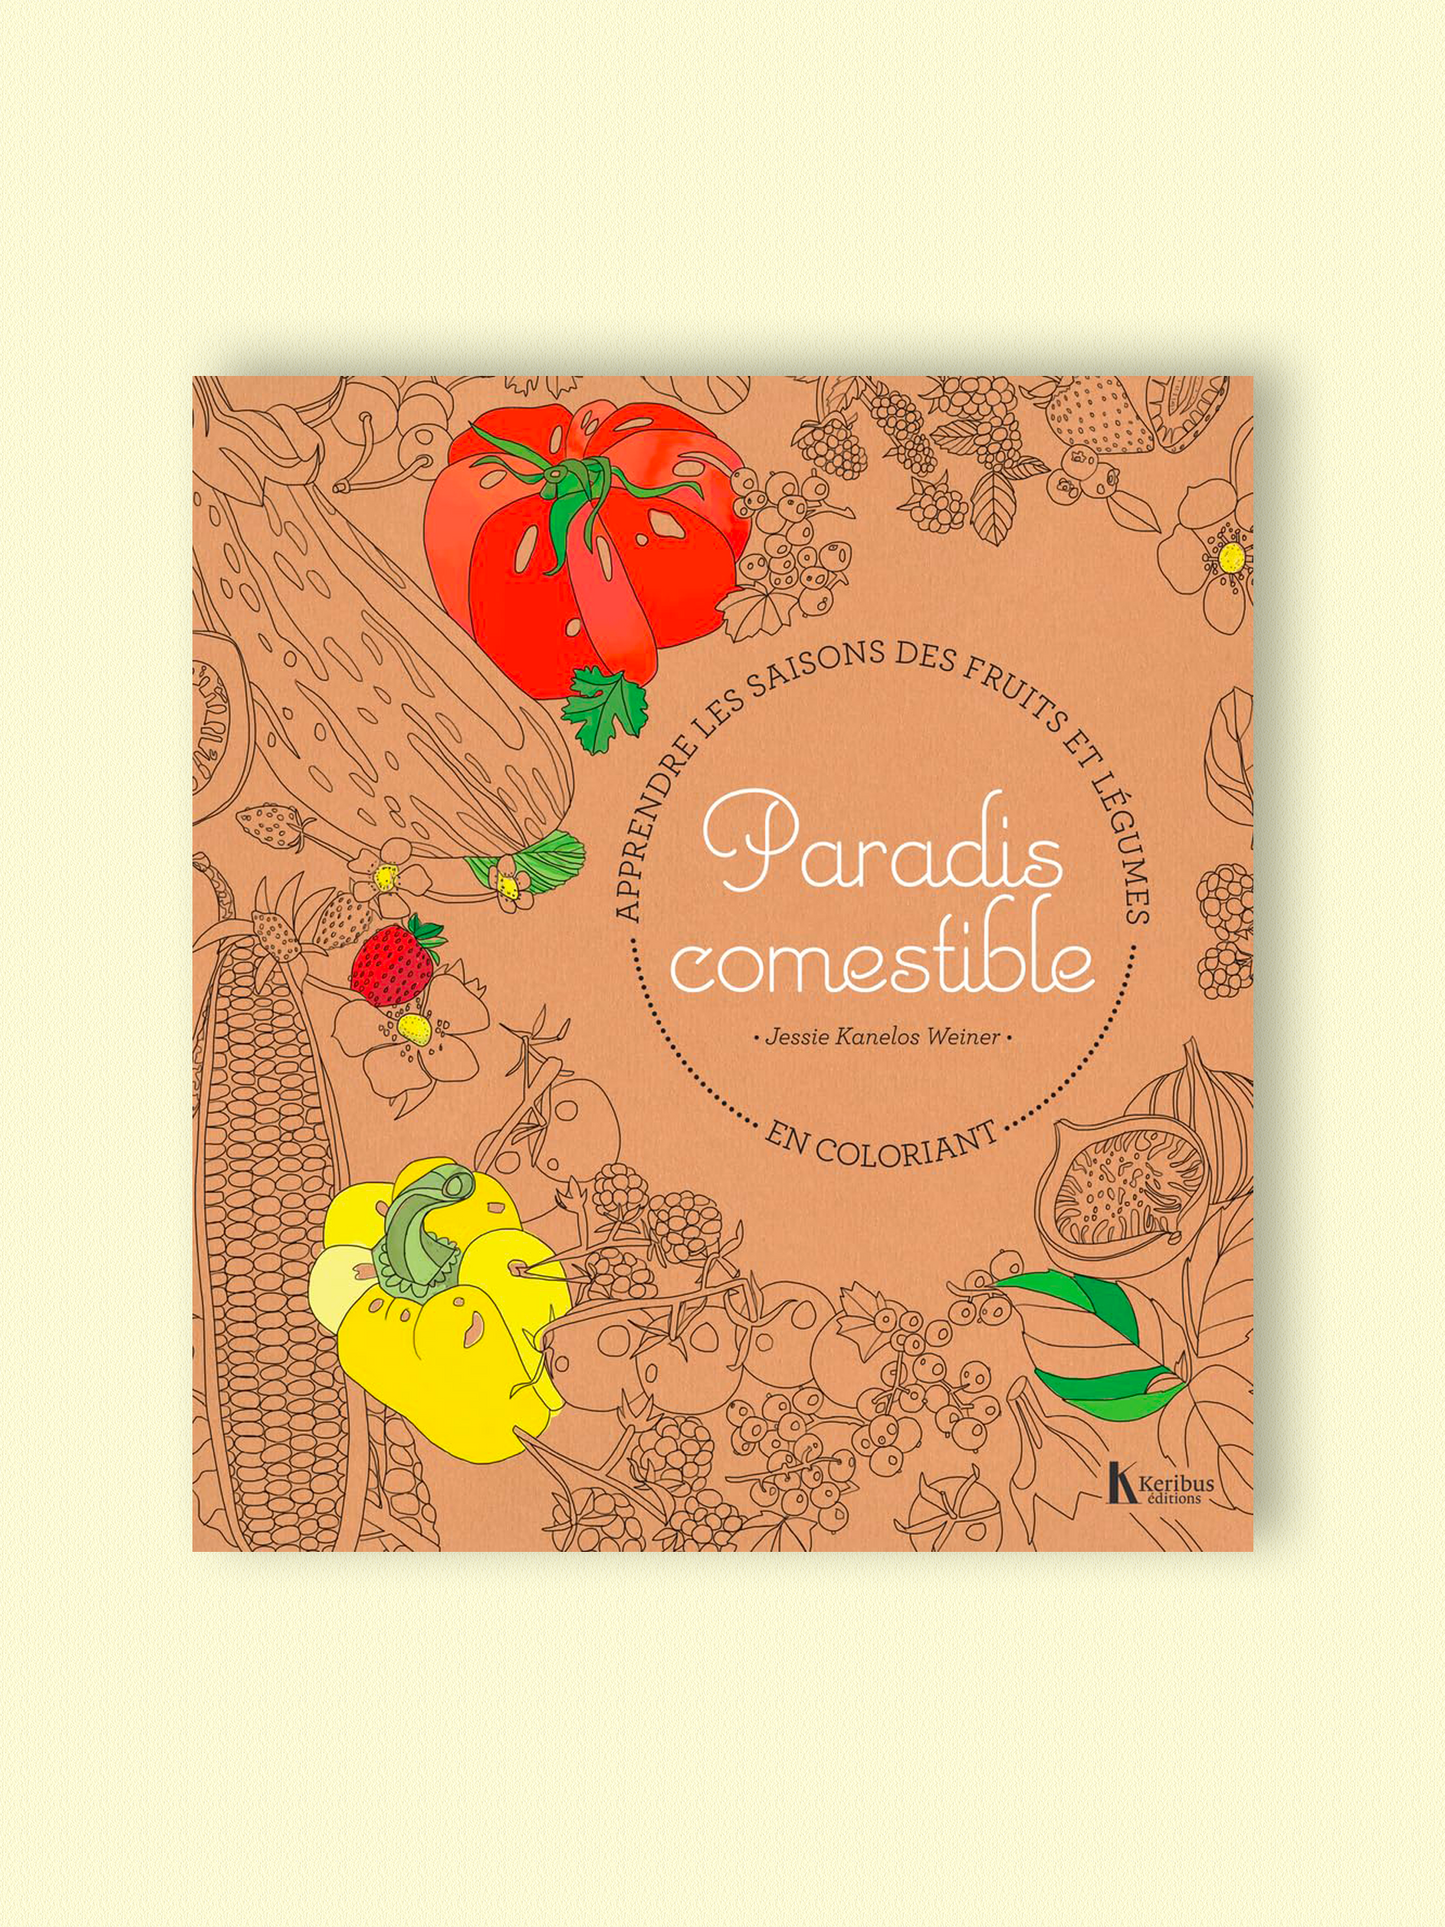 Paradis comestible, apprendre les saisons des fruits et légumes en coloriant | Jessie Kanelos